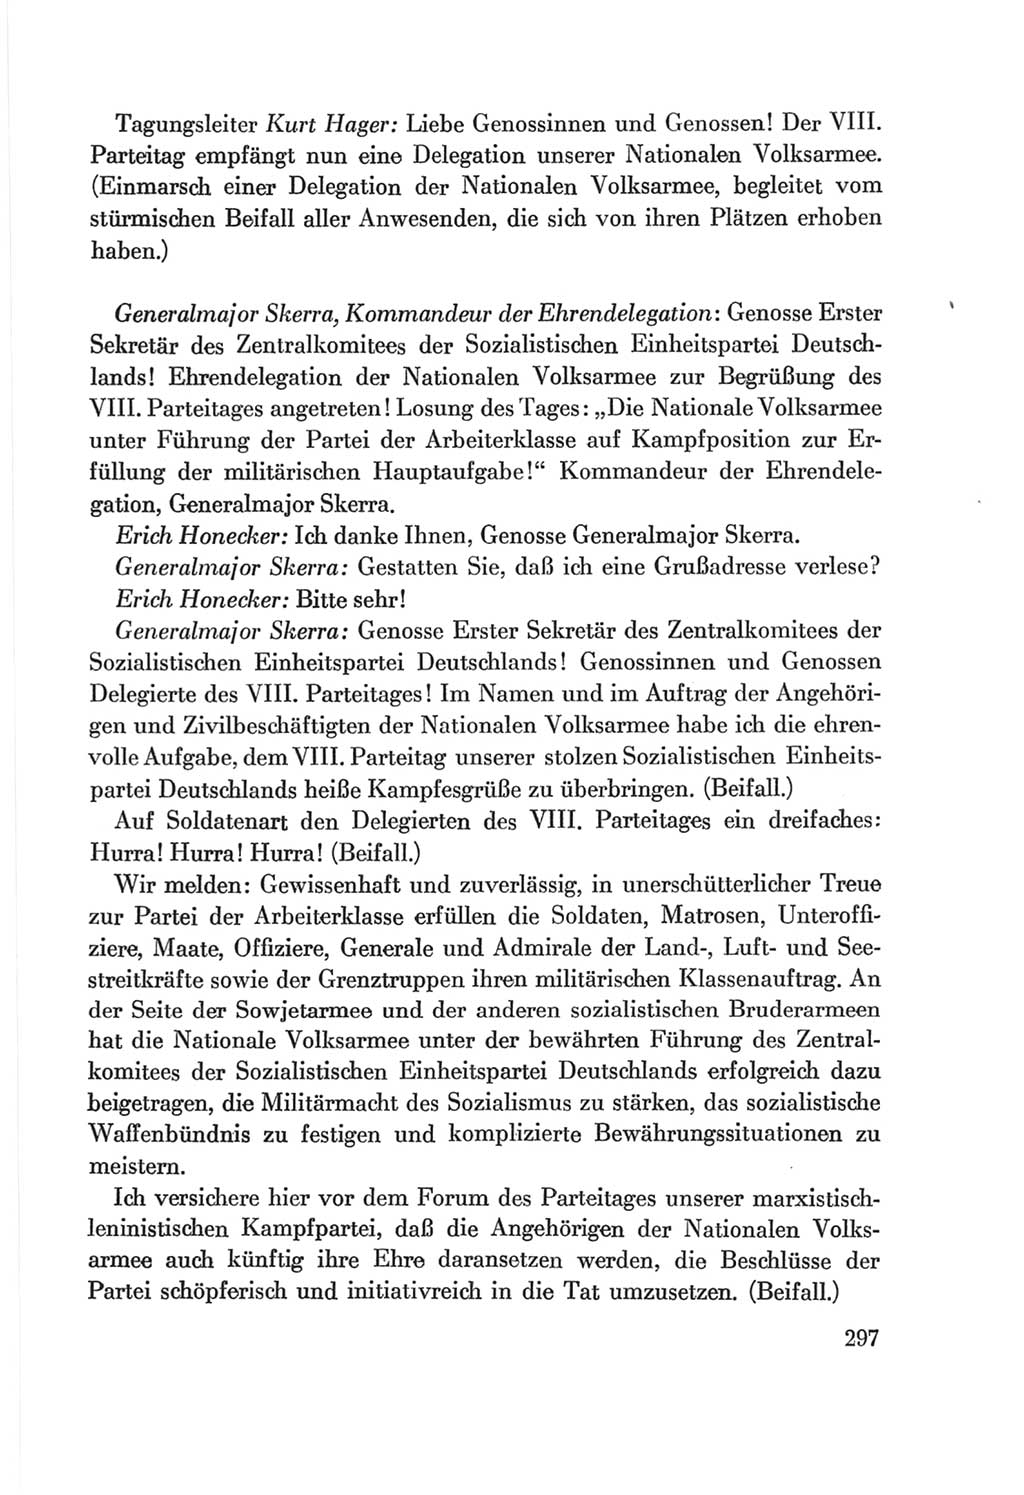 Protokoll der Verhandlungen des Ⅷ. Parteitages der Sozialistischen Einheitspartei Deutschlands (SED) [Deutsche Demokratische Republik (DDR)] 1971, Band 1, Seite 297 (Prot. Verh. Ⅷ. PT SED DDR 1971, Bd. 1, S. 297)